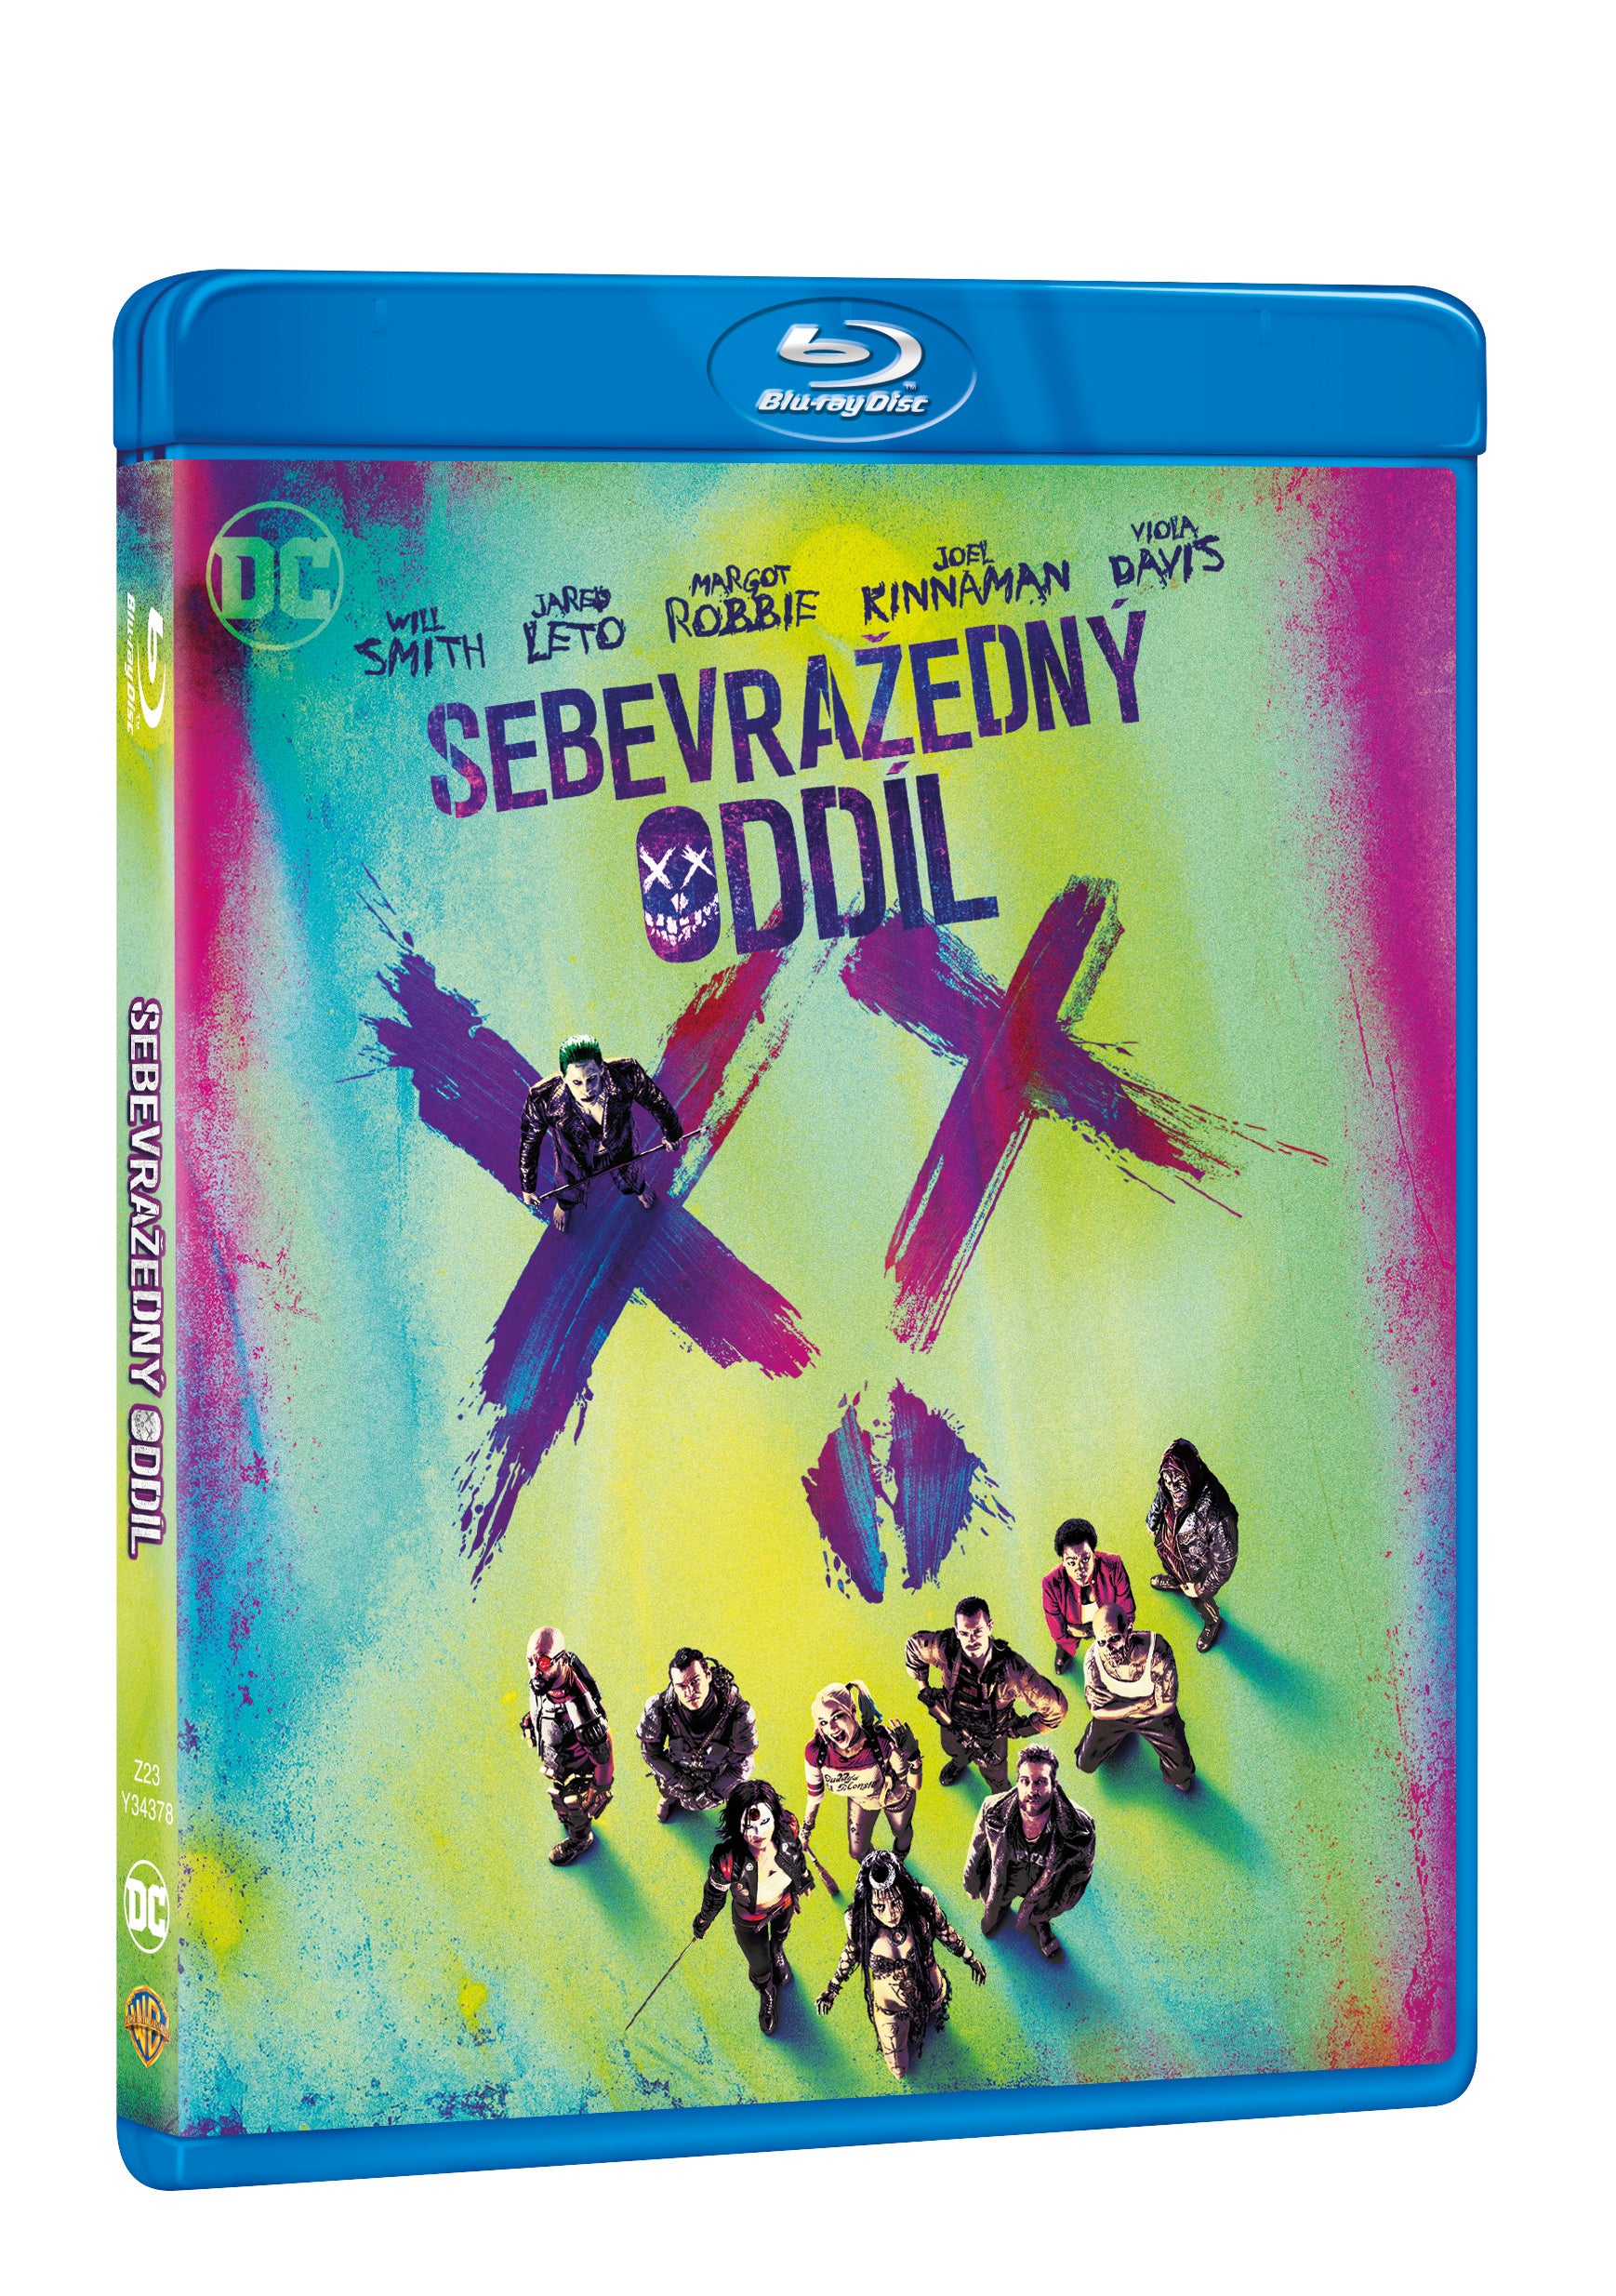 Sebevrazedny oddil BD / Suicide Squad - Czech version